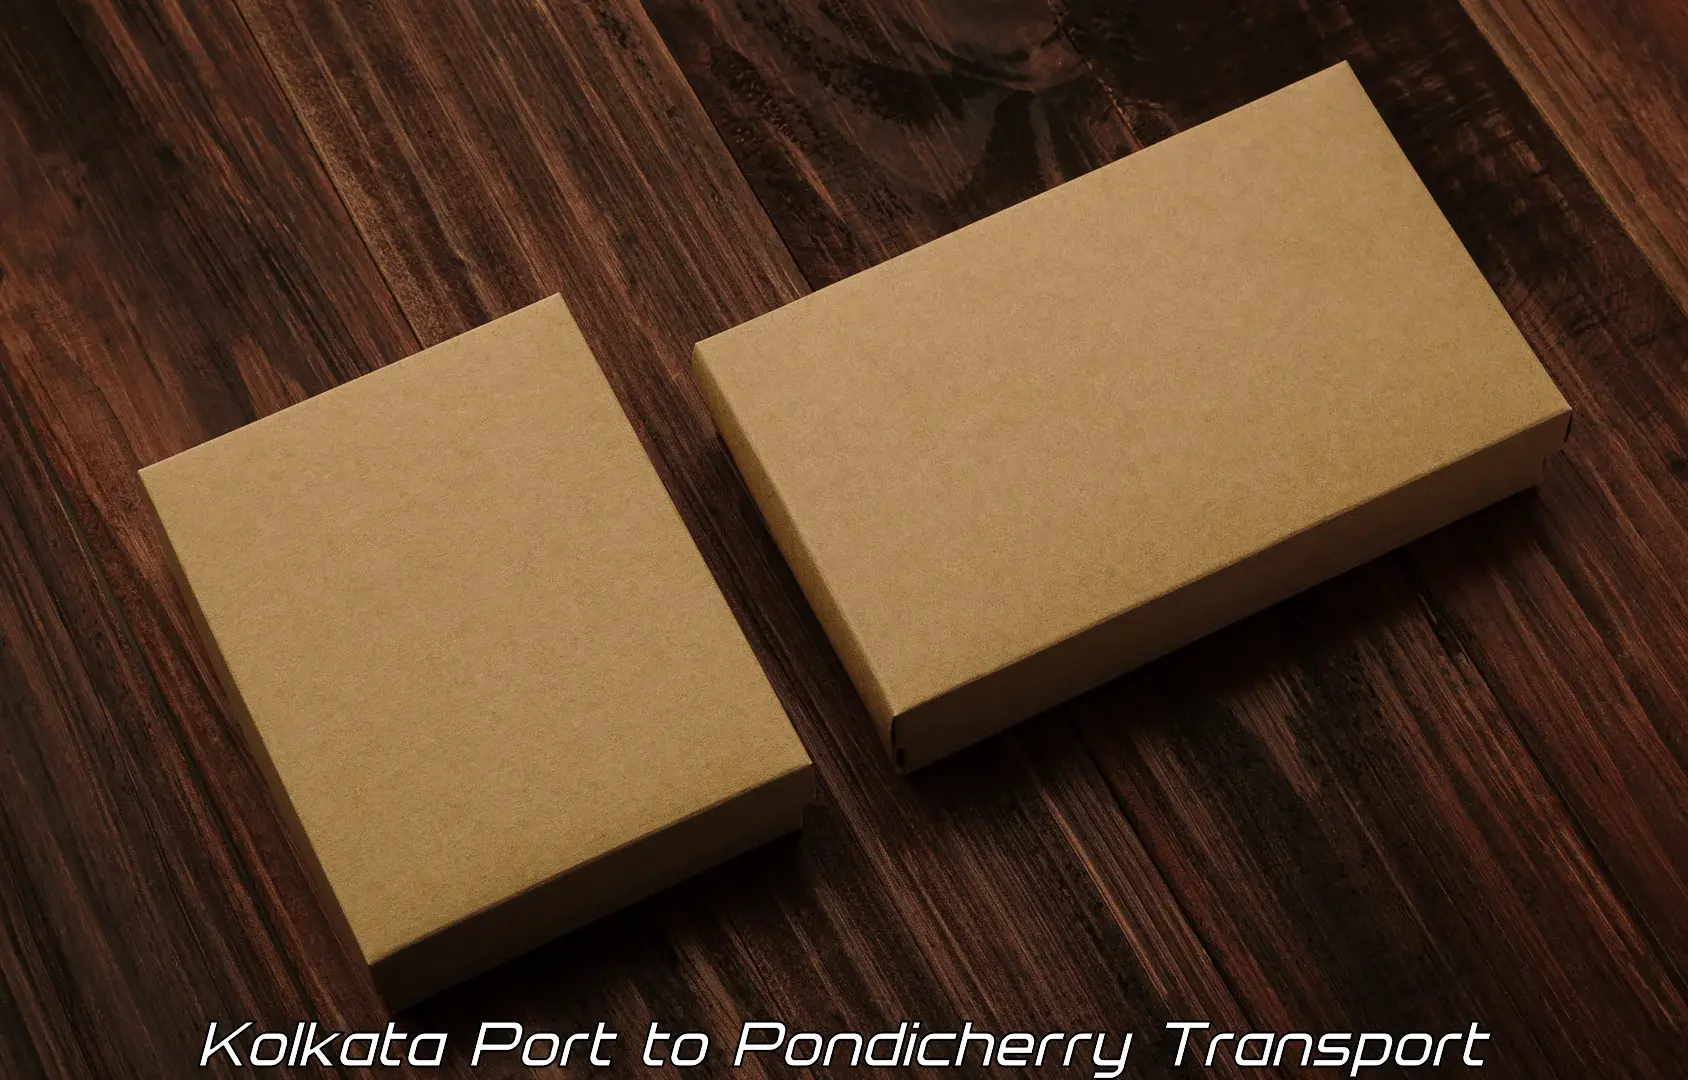 Cargo transport services in Kolkata Port to Pondicherry University